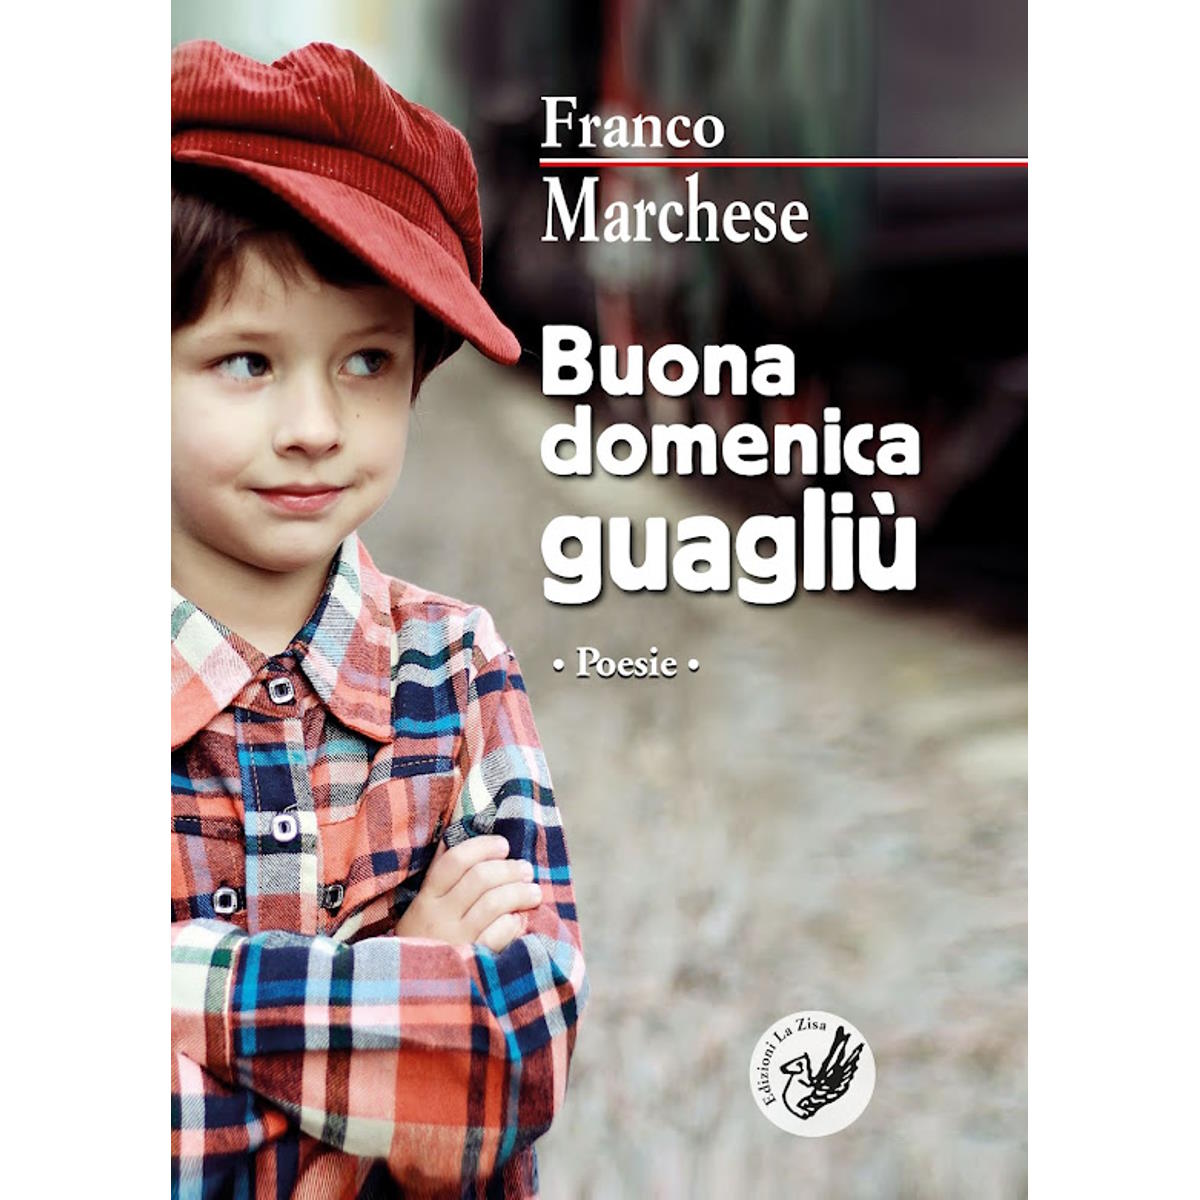 Un nuovo titolo in libreria: Franco Marchese, Buona domenica guagliù. Poesie, Edizioni La Zisa